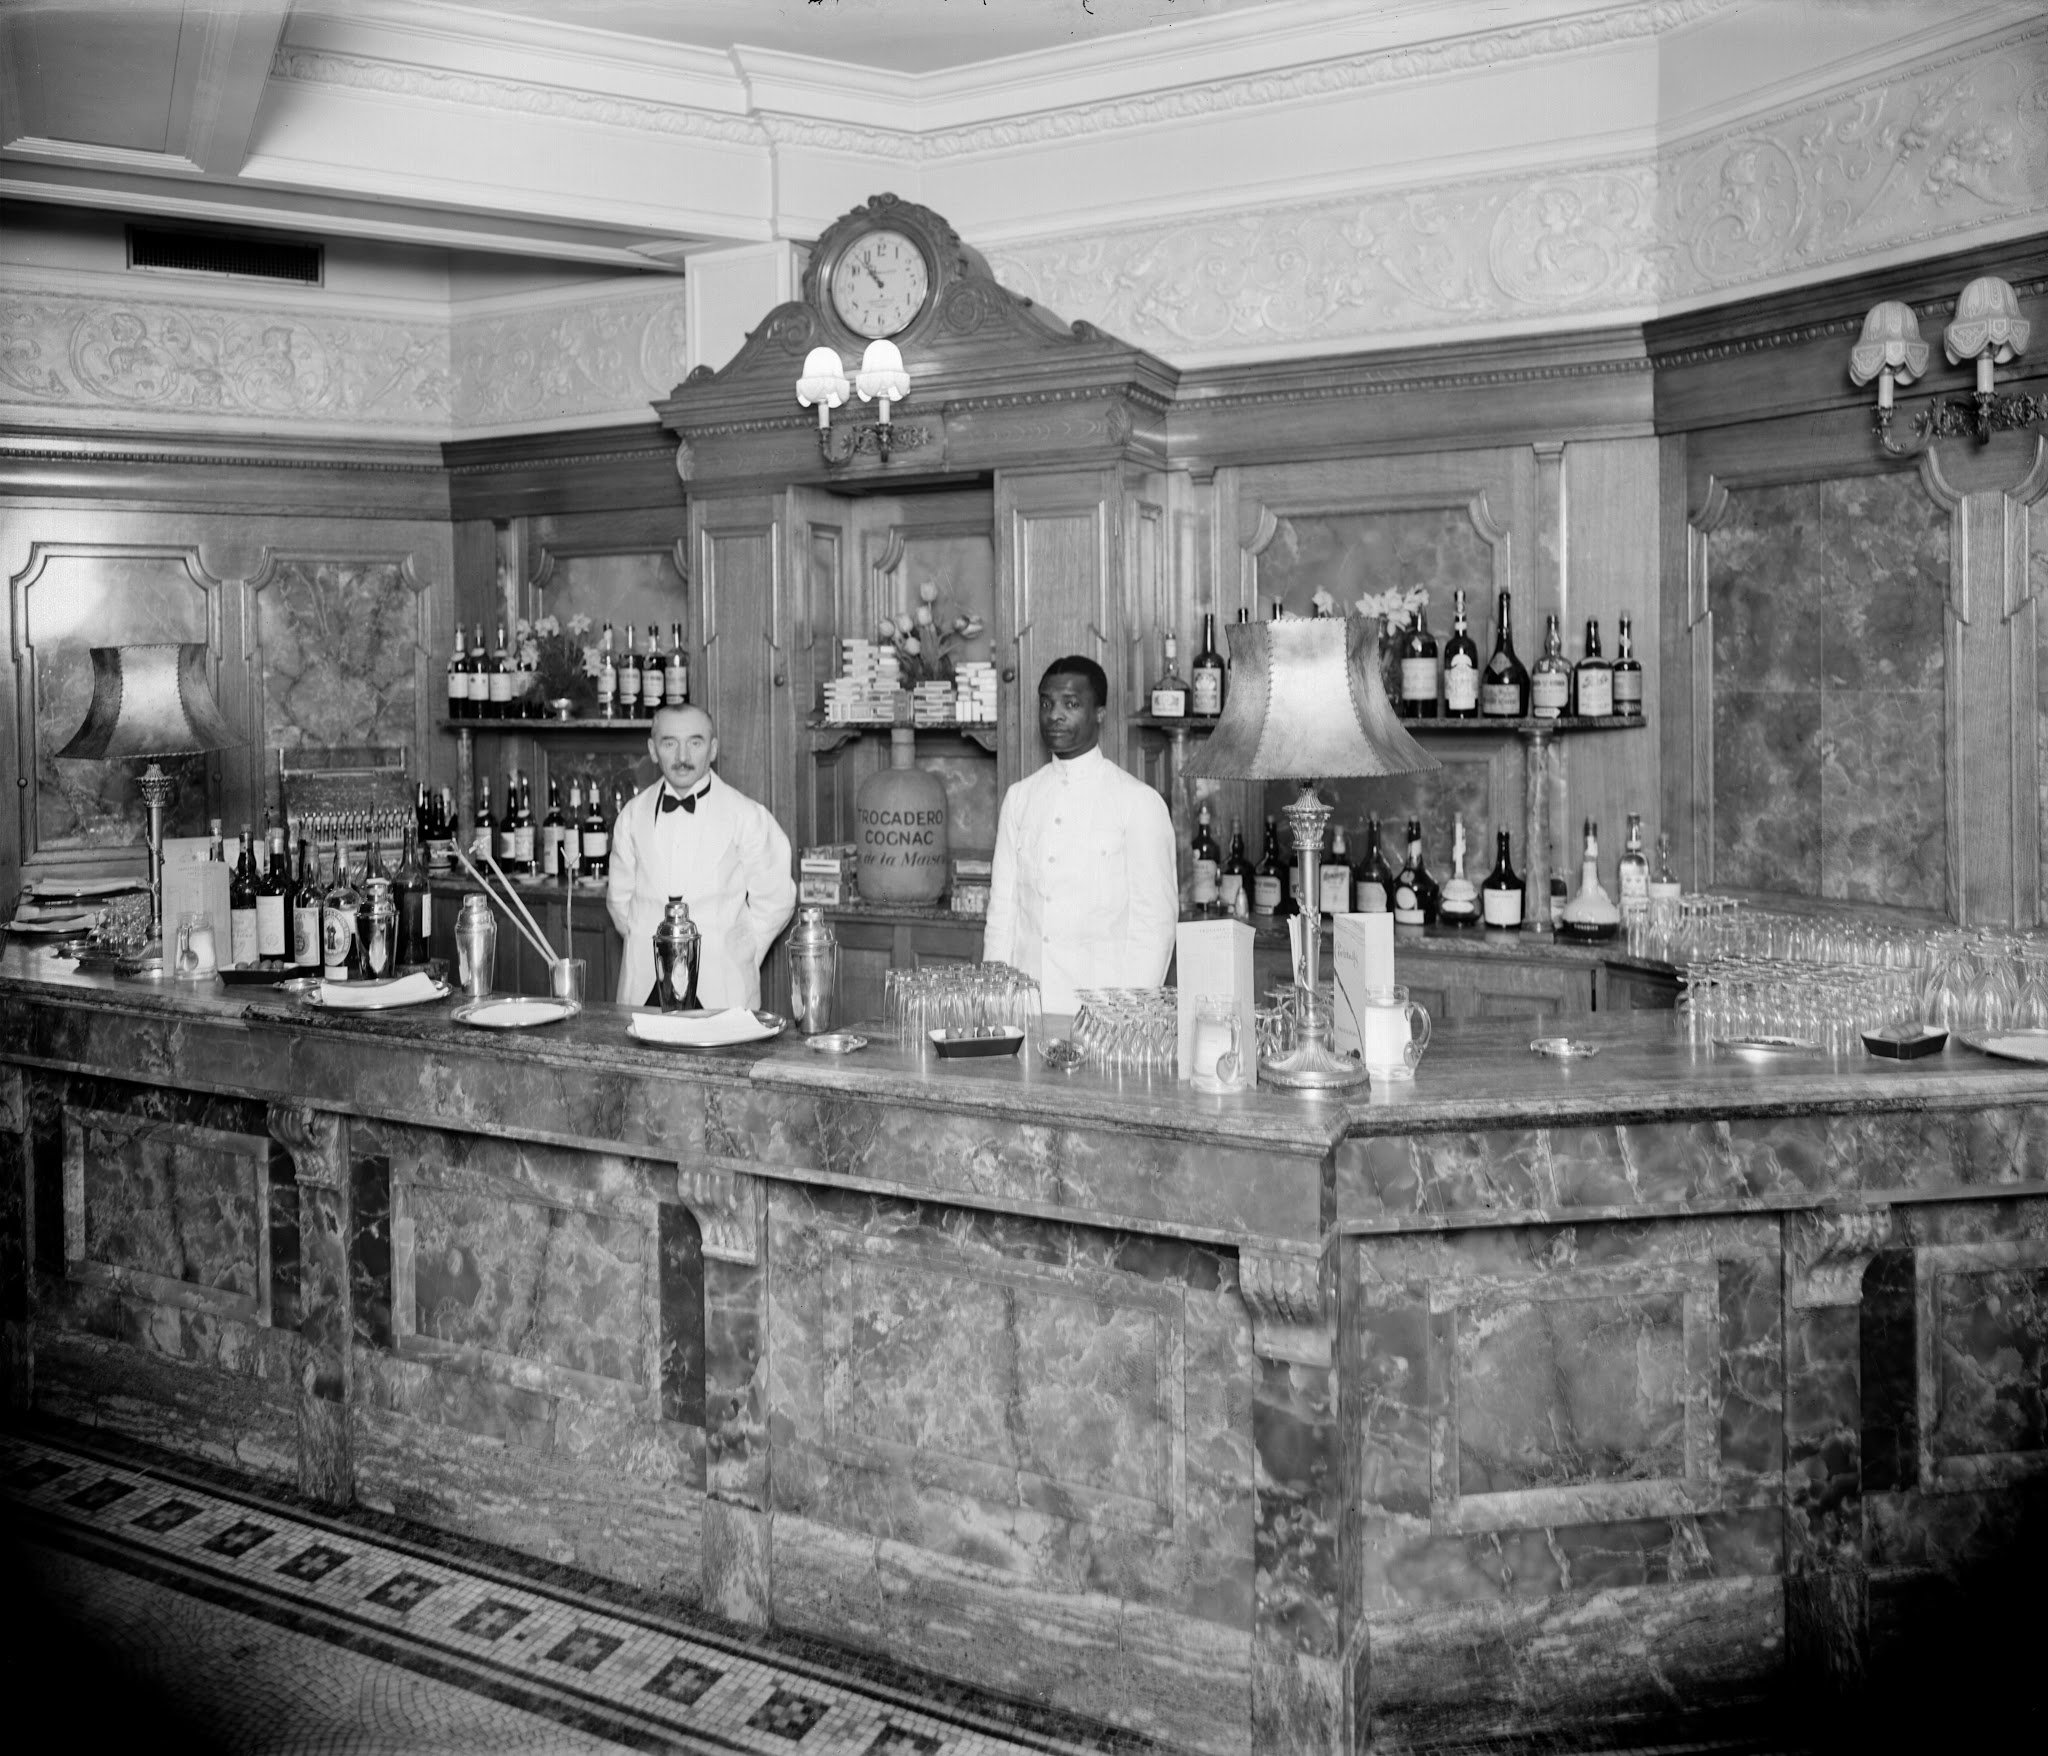 The Long Bar at the Trocadero